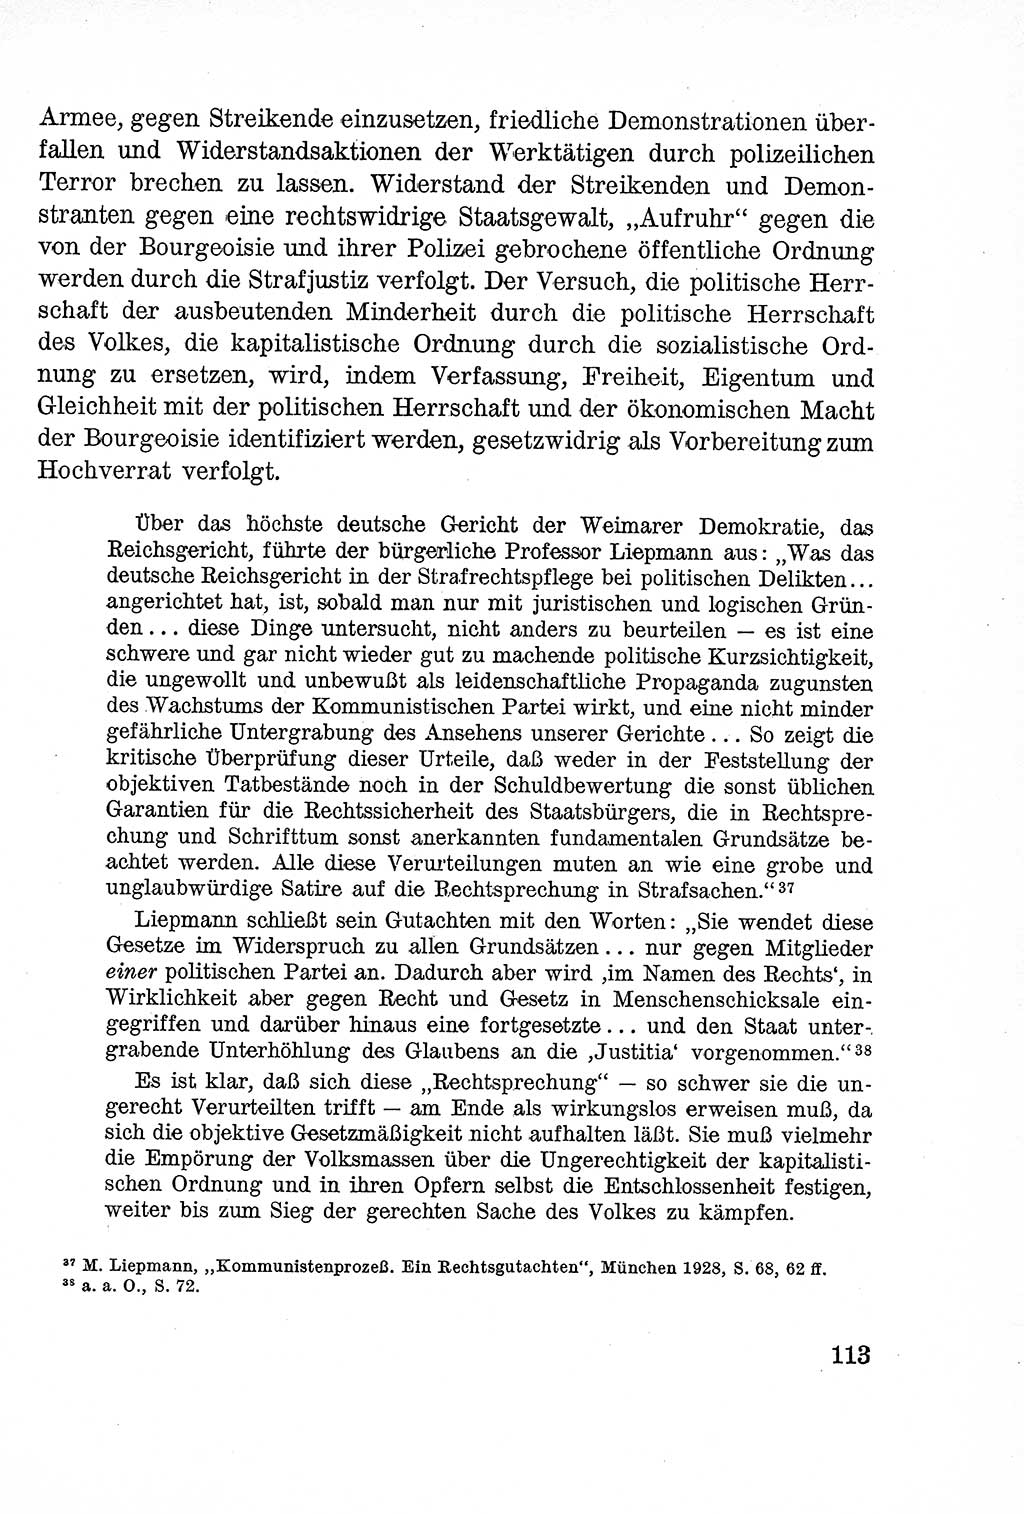 Lehrbuch des Strafrechts der Deutschen Demokratischen Republik (DDR), Allgemeiner Teil 1957, Seite 113 (Lb. Strafr. DDR AT 1957, S. 113)